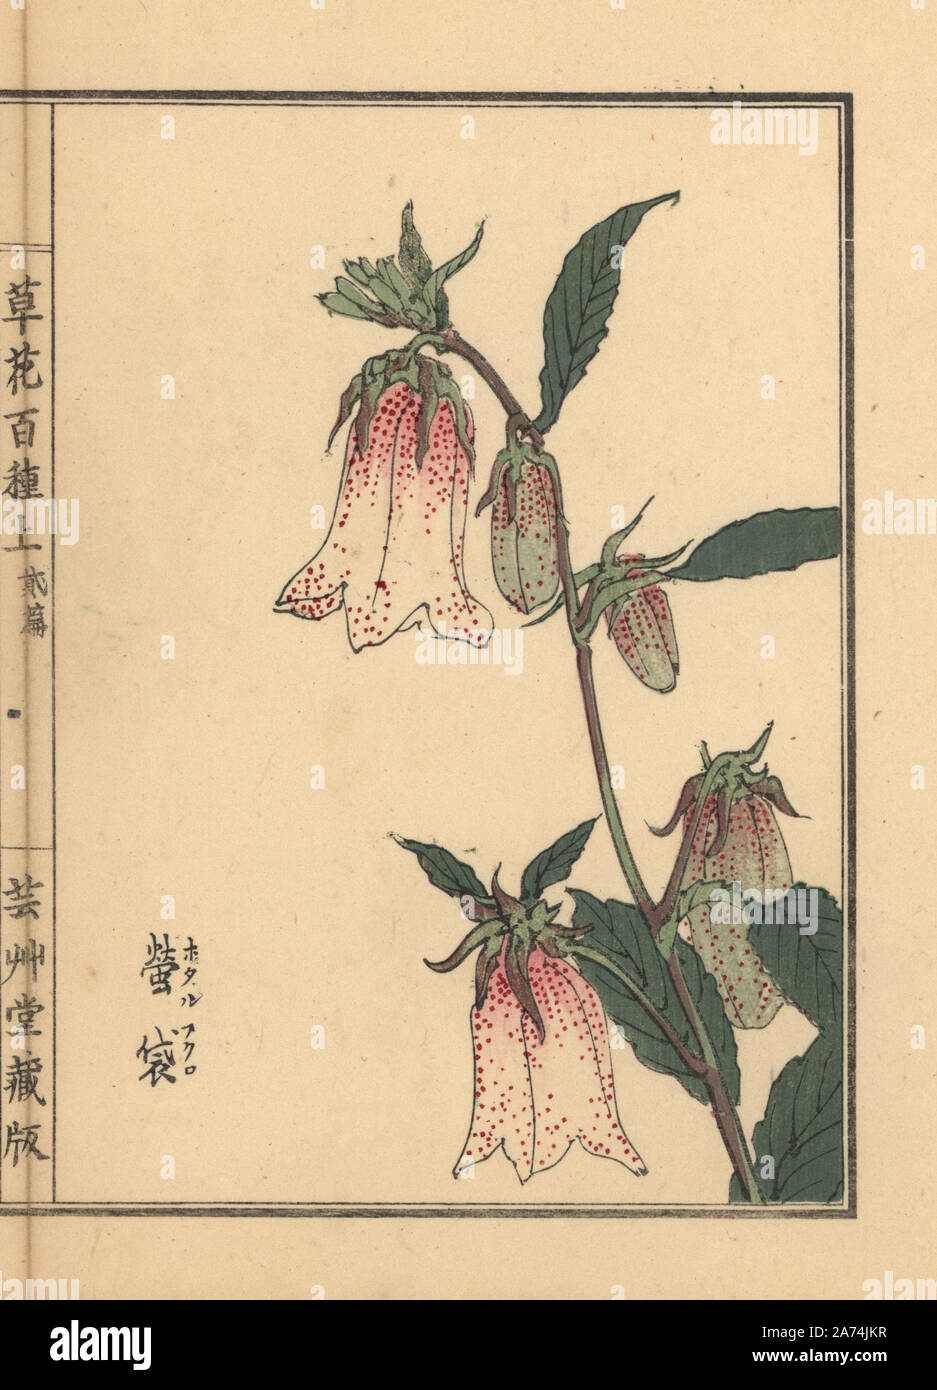 Hotaru bukuro or spotted bellflower, Campanula punctata. Handcoloured woodblock print by Kono Bairei from Kusa Bana Hyakushu (One Hundred Varieties of Flowers), Tokyo, Yamada, 1901. Stock Photo